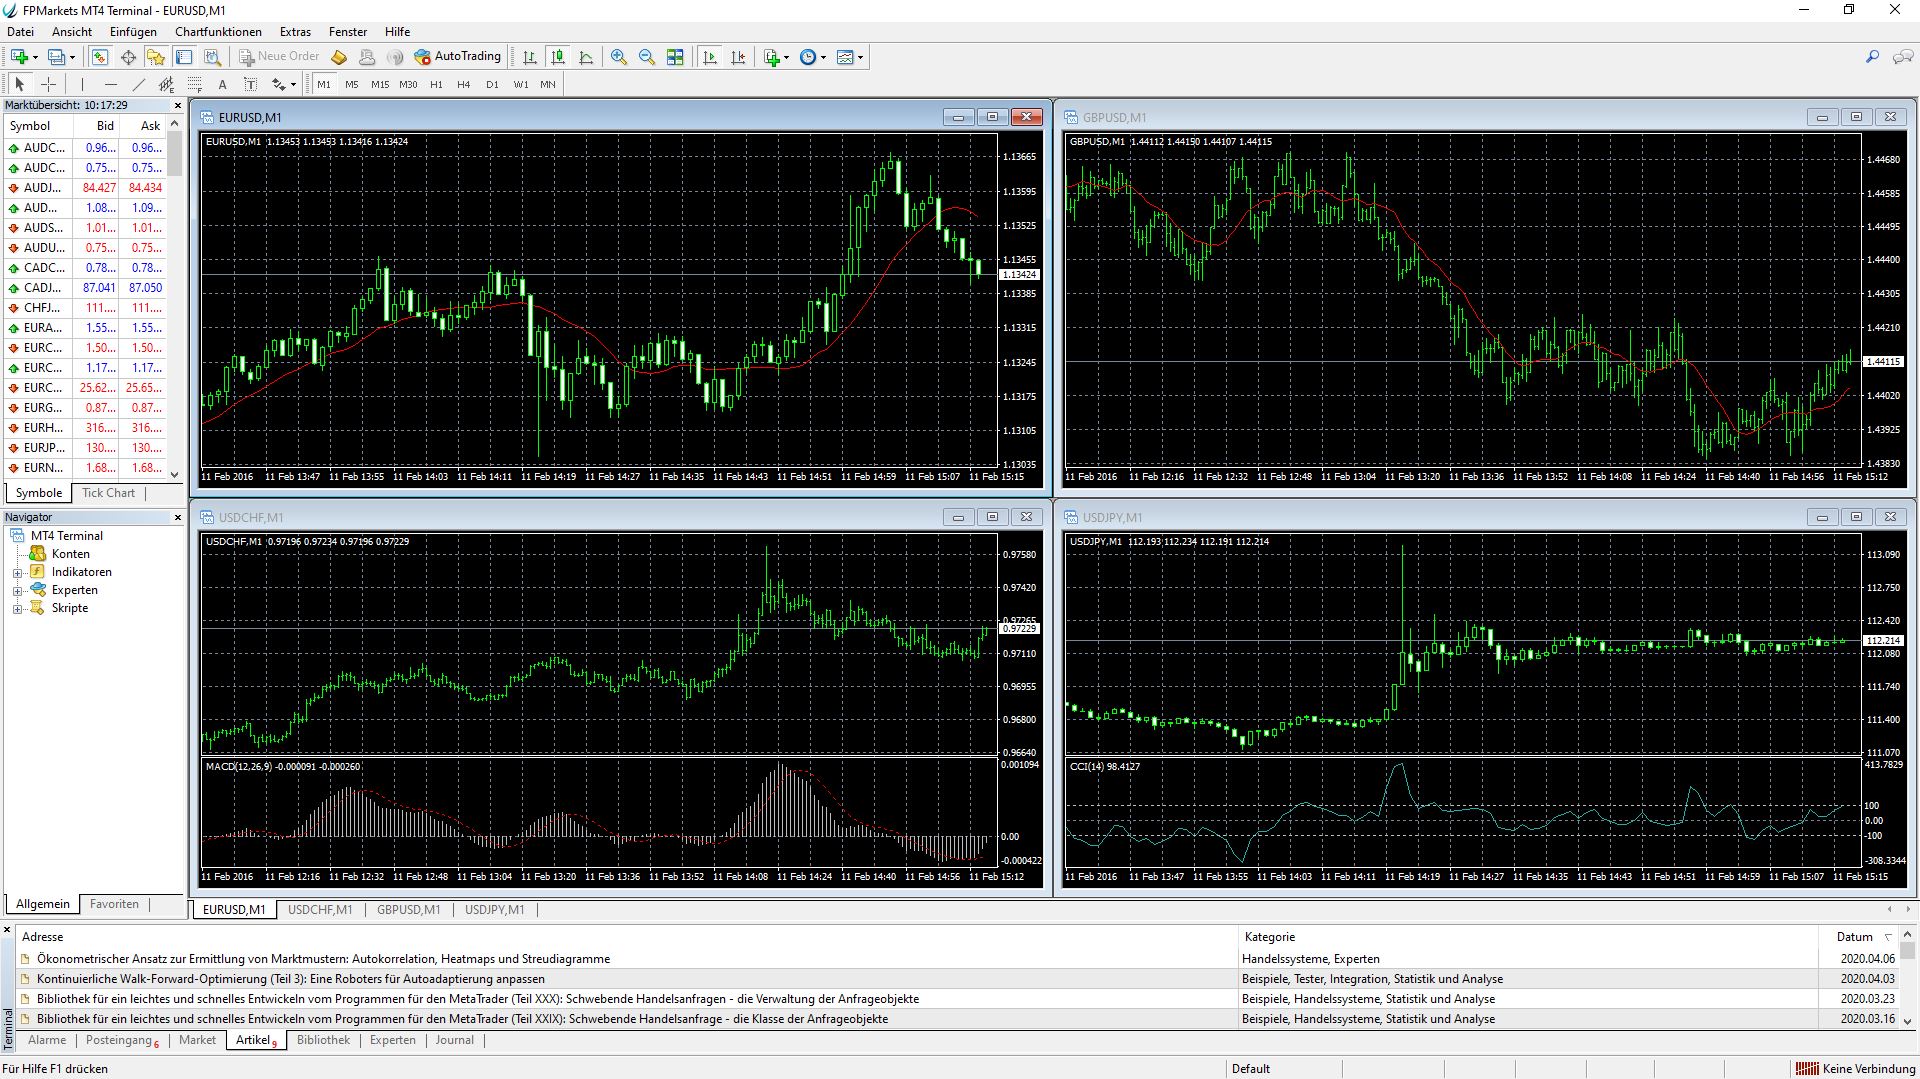 FP Markets Desktop Trading Platform